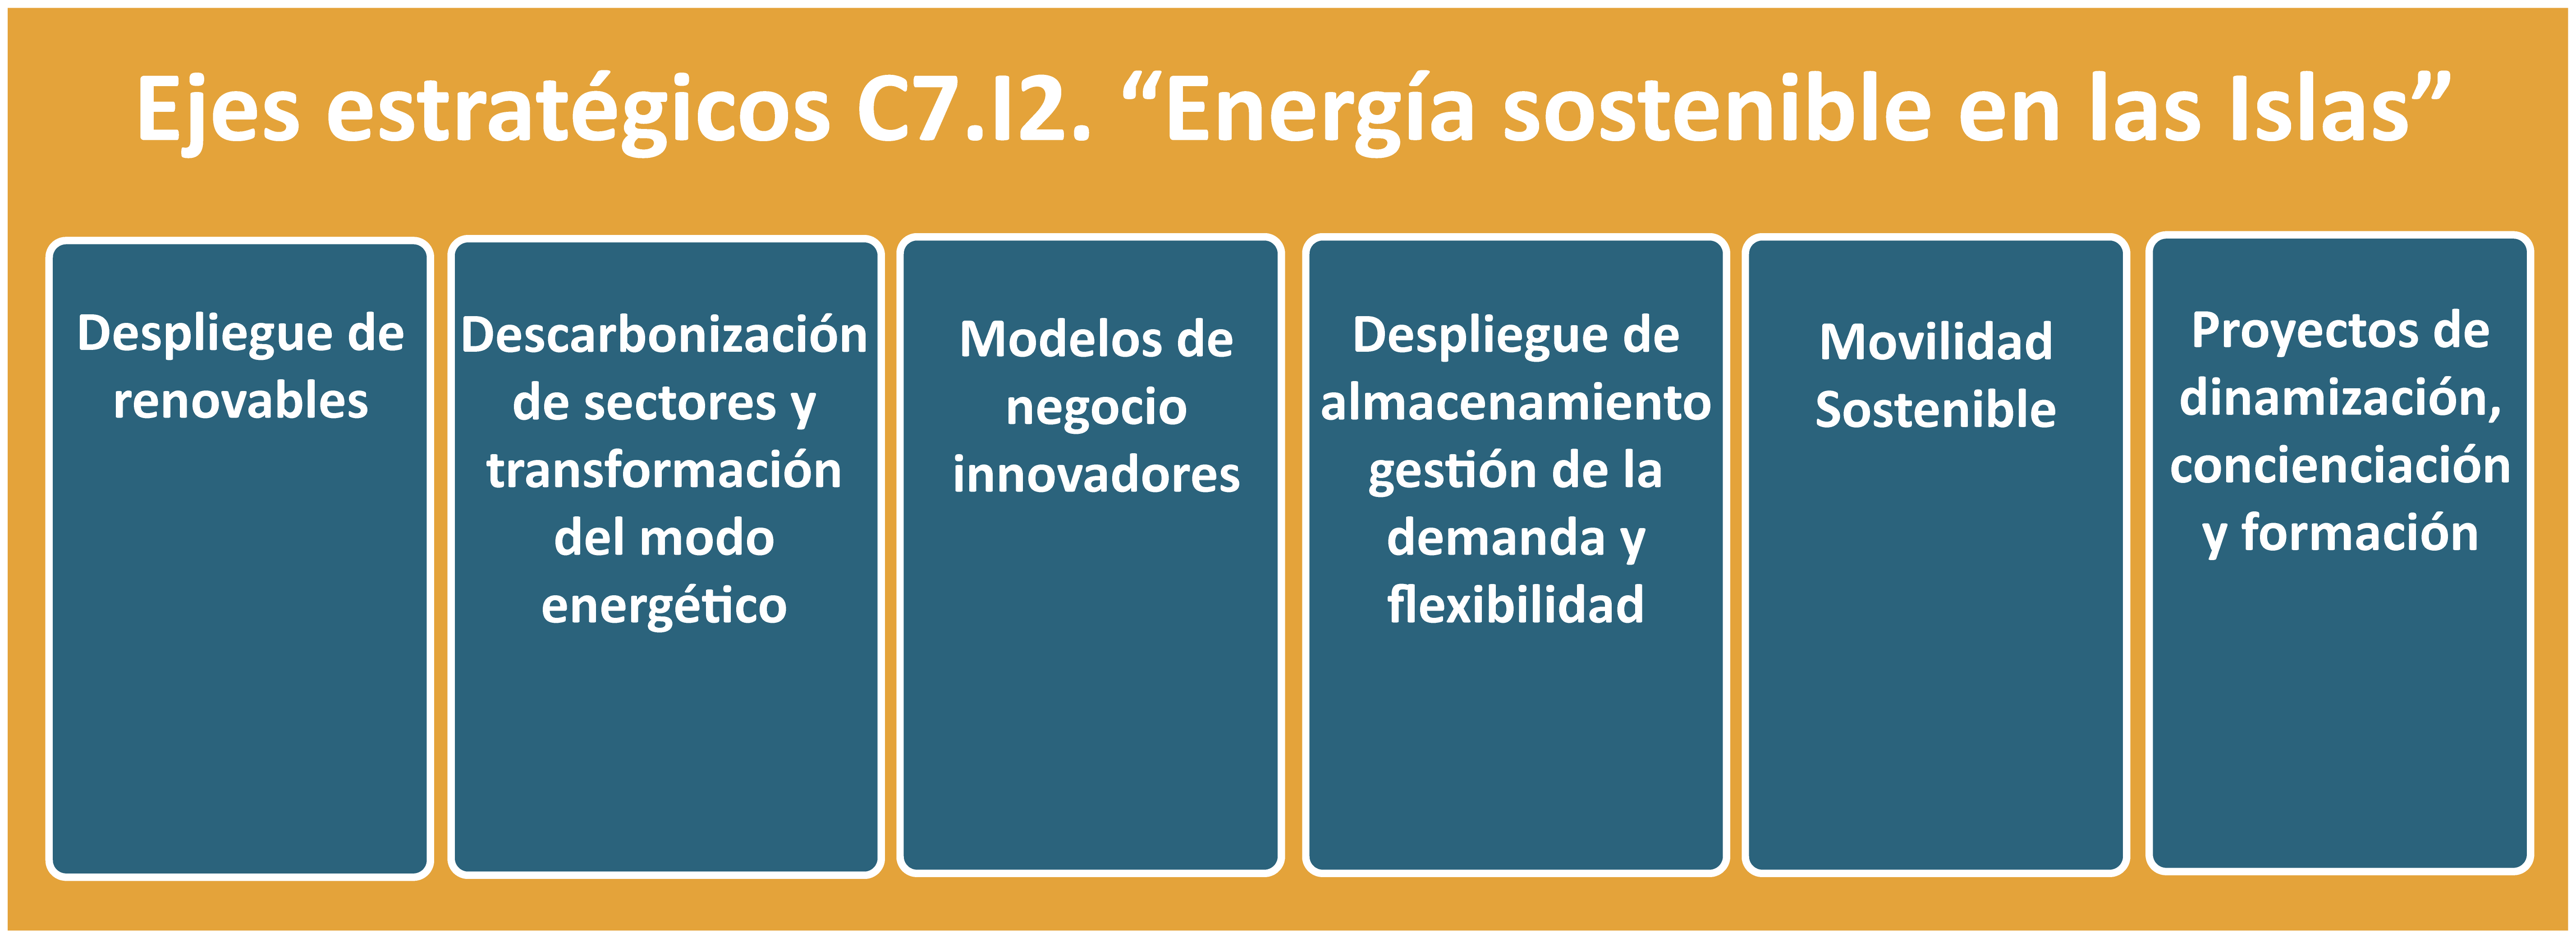 Ejes estratégicos C7.I2 "Energía Sostenible en las Islas"